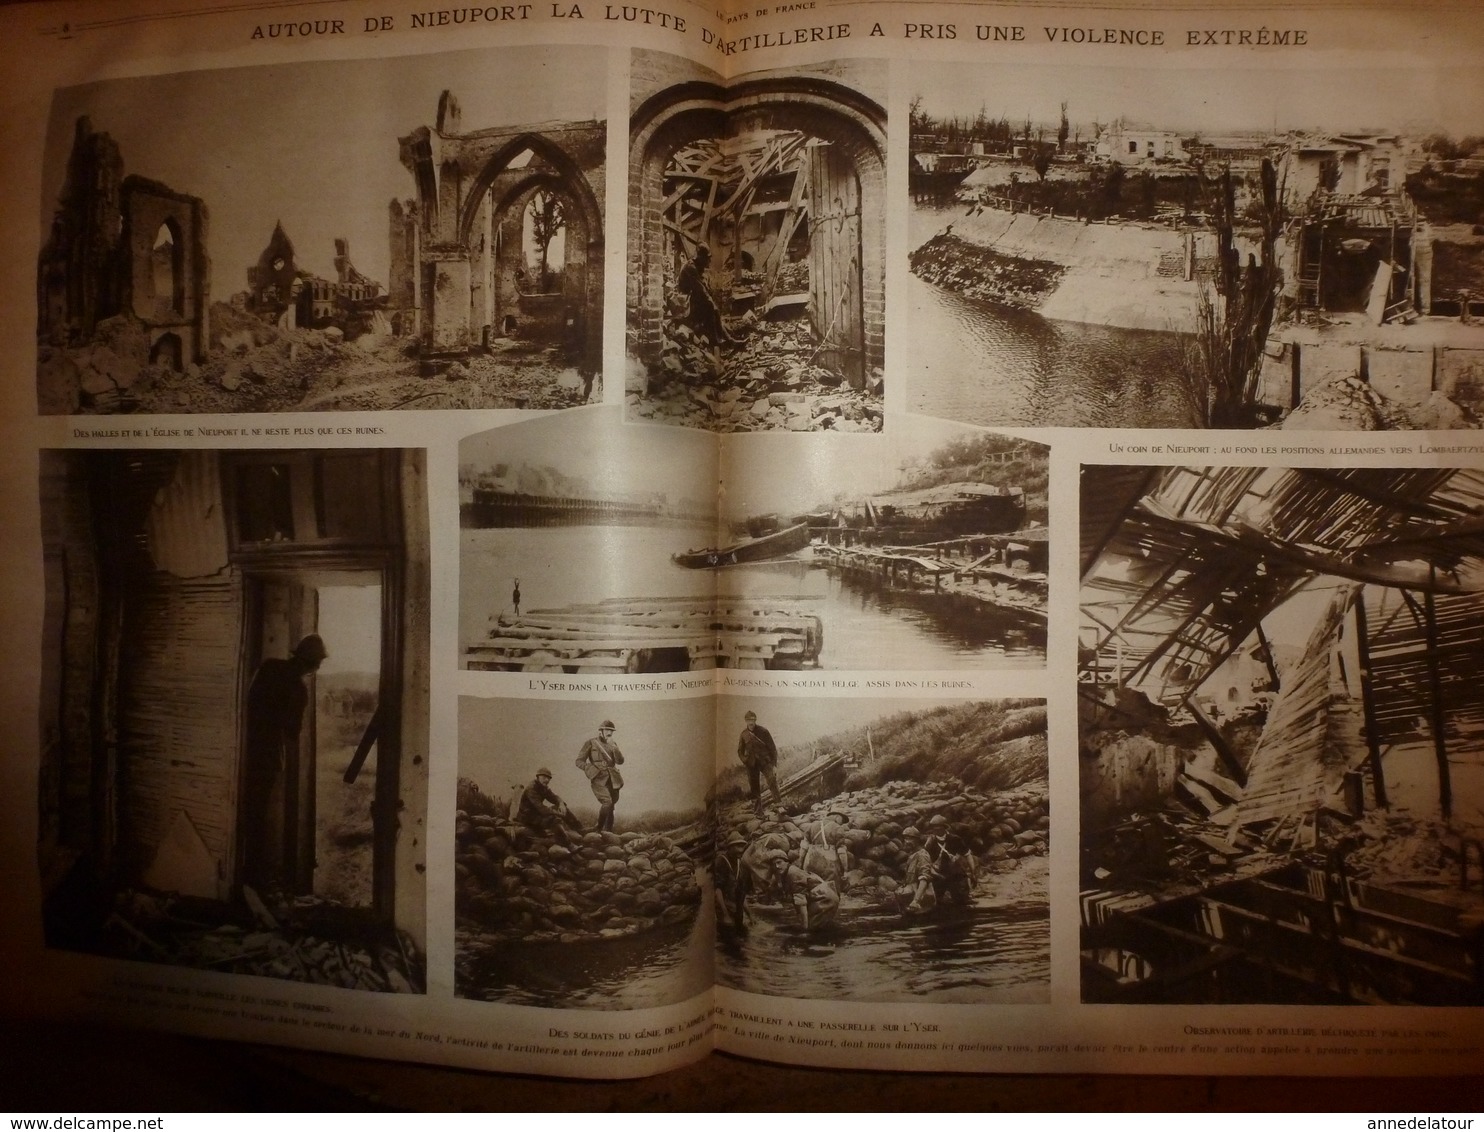 1917-1918 LPDF Important documentaire texte-photos concernant la BELGIQUE sur cette période de la 1ère GUERRE MONDIALE